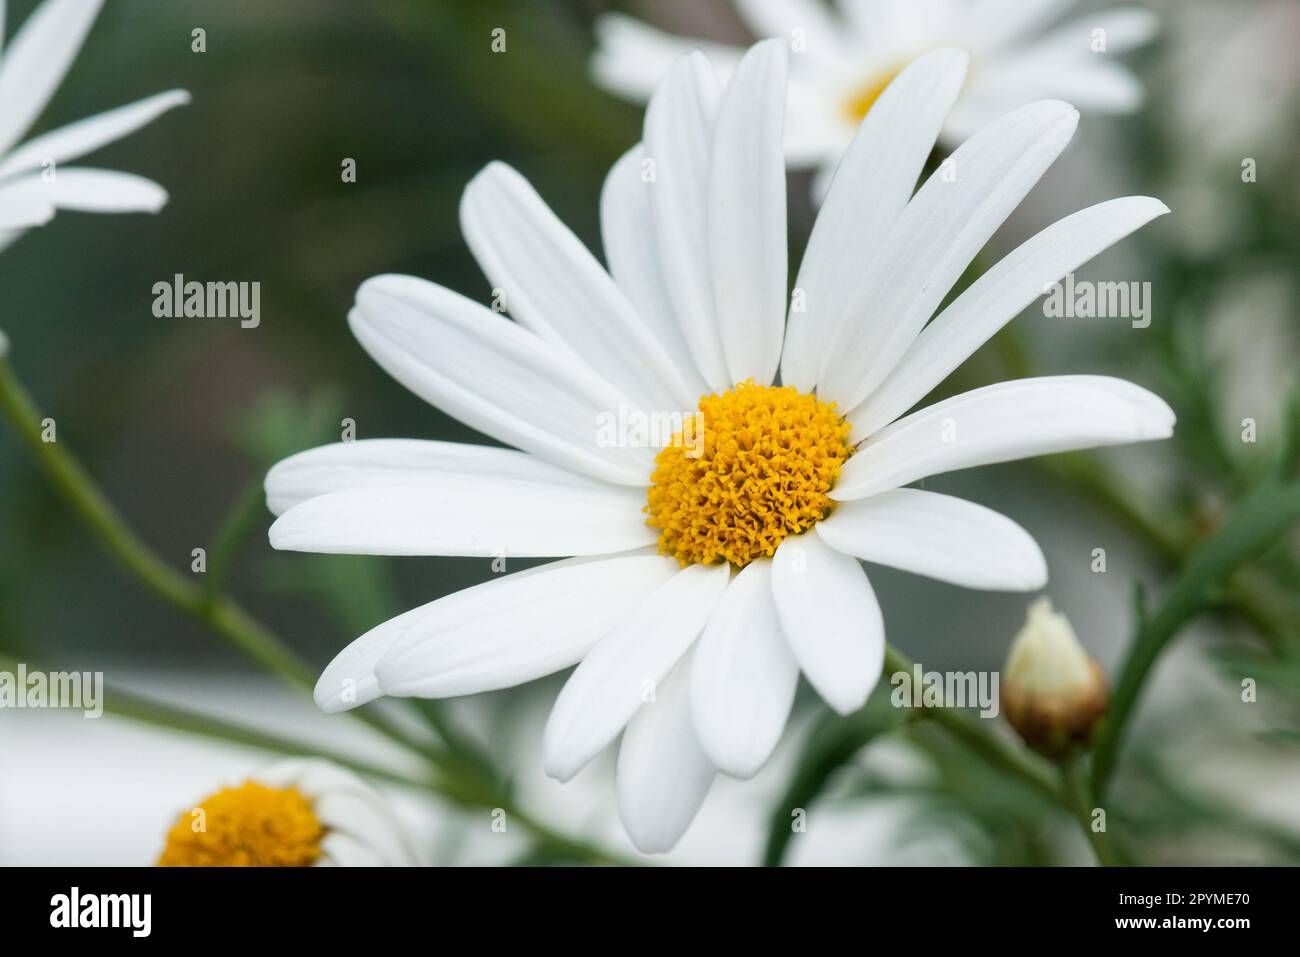 Chrysanthemum marganta white large daisy close-up Stock Photo